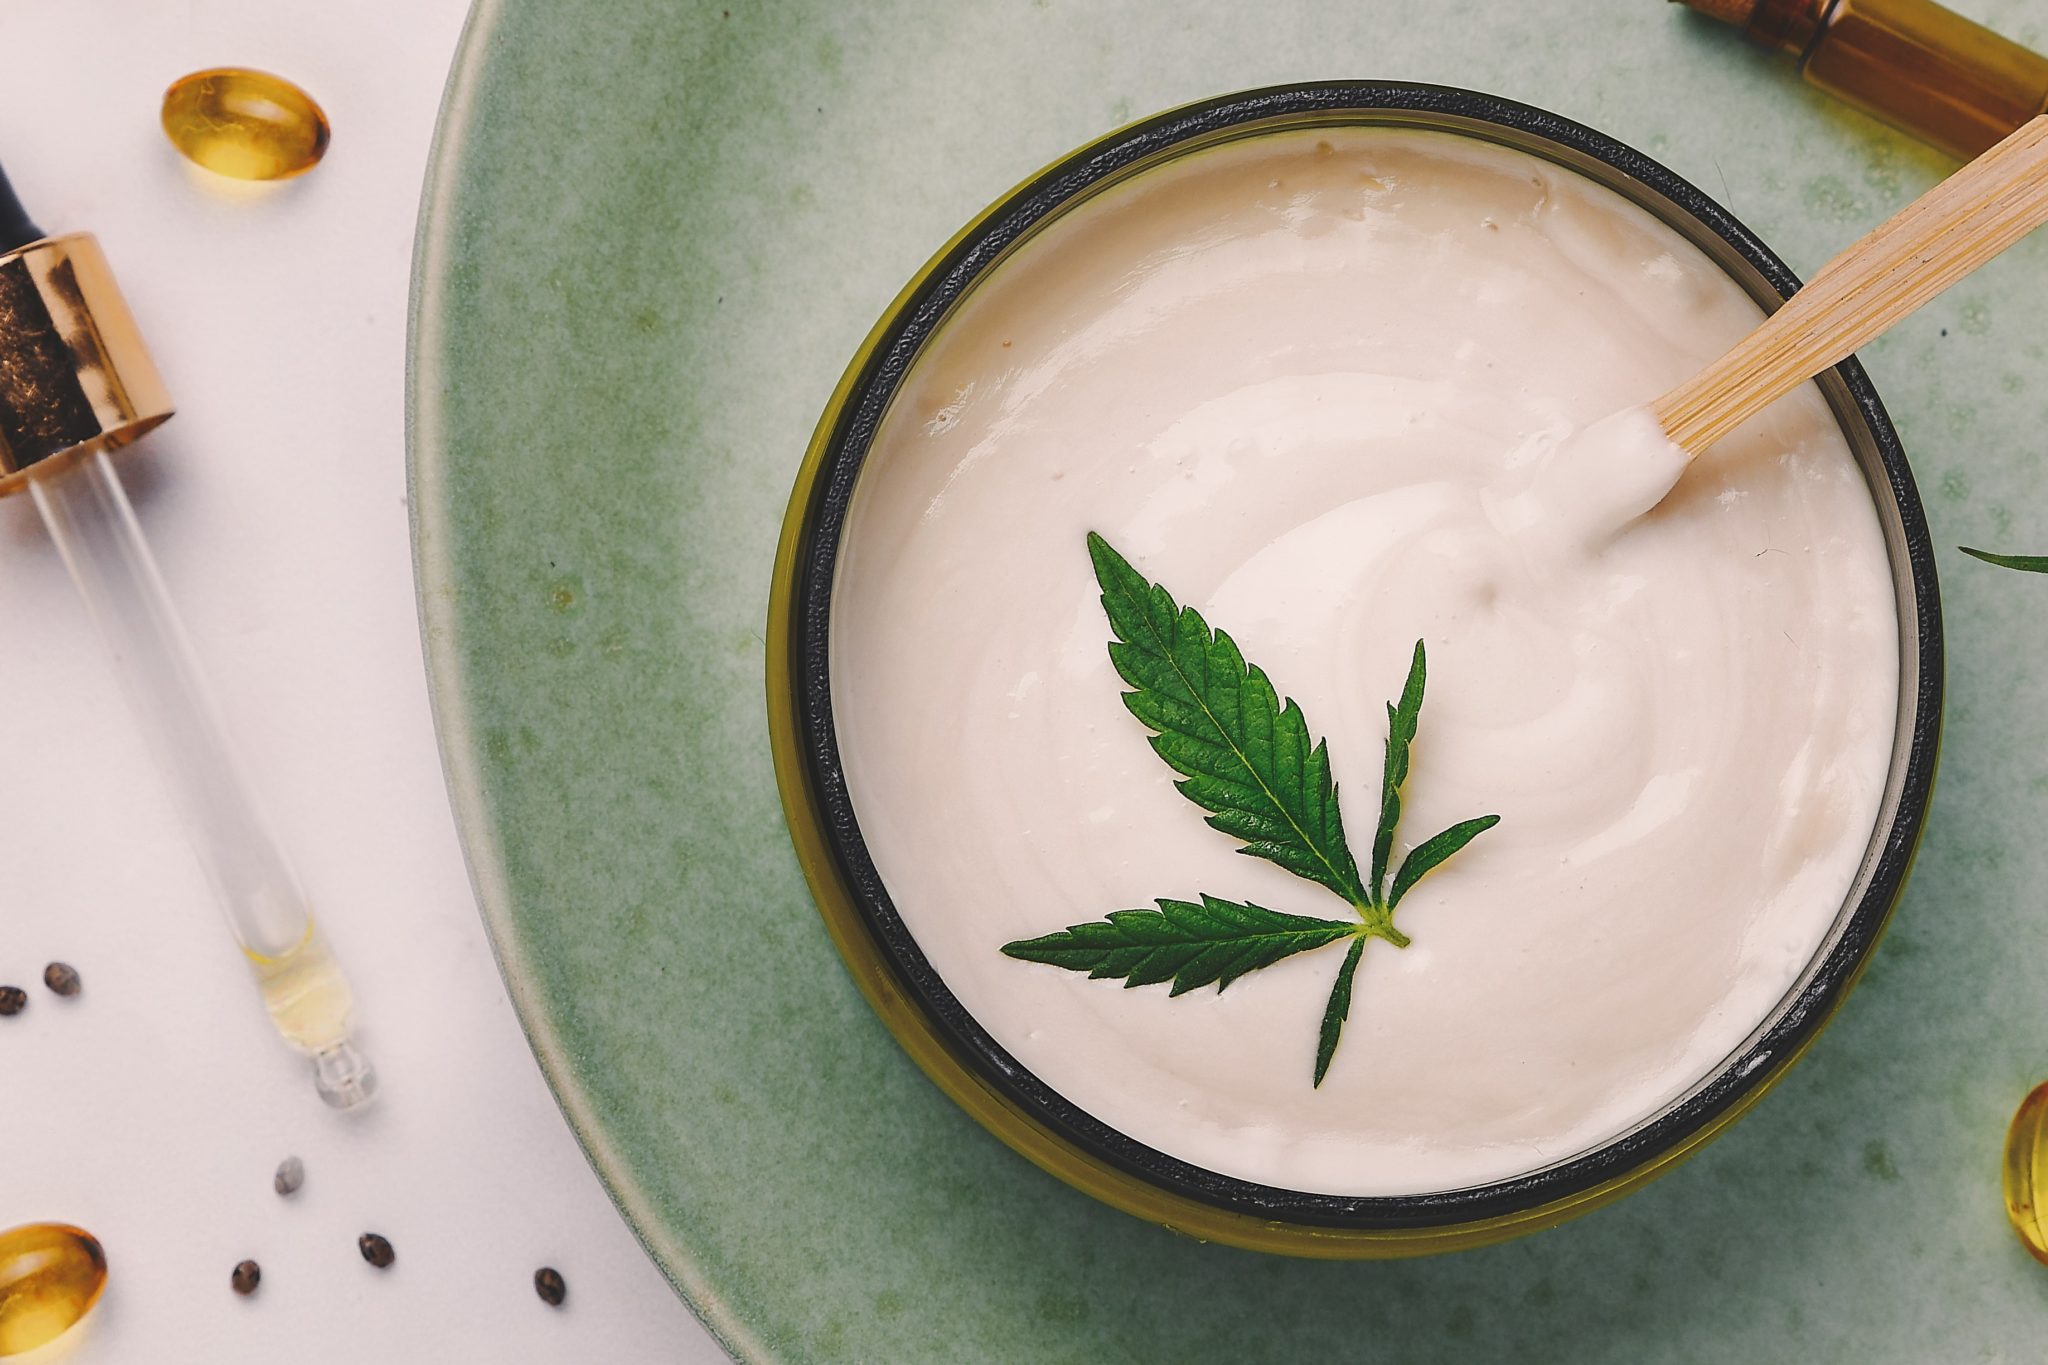 Pot de lotion blanche au chanvre. Crème de cannabis avec feuille de marijuana - concept de cannabis. Mise à plat, vue de dessus.